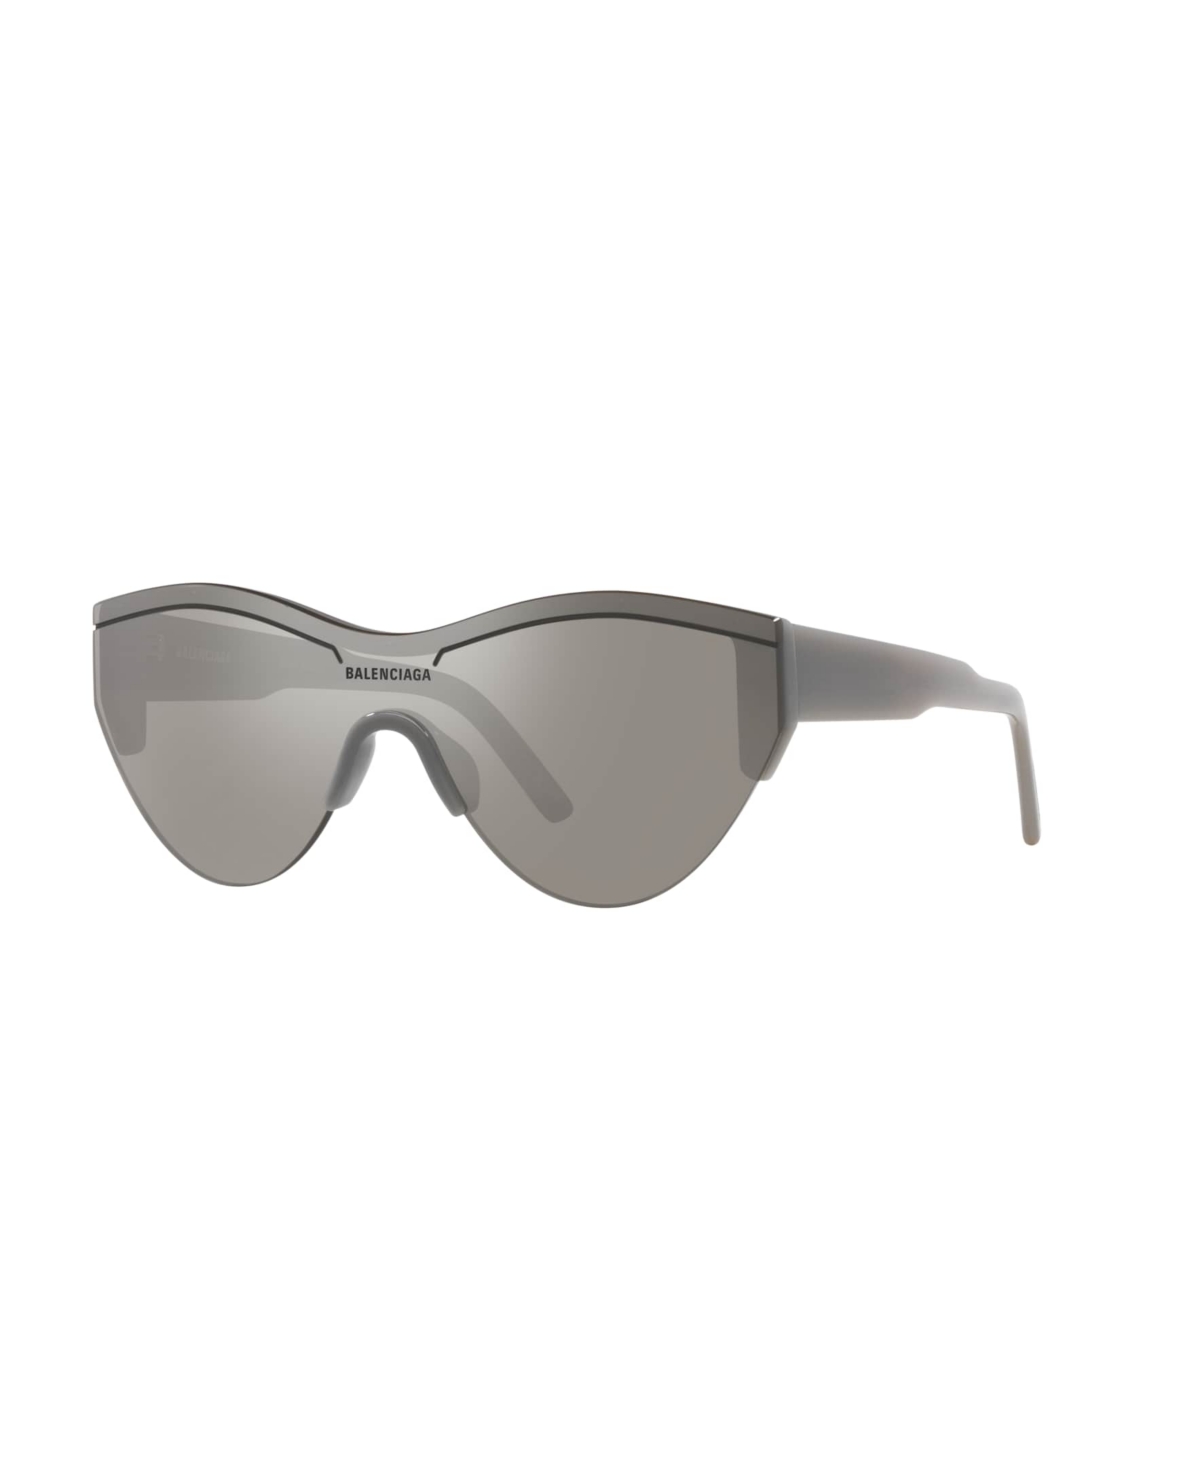 Balenciaga Unisex Sunglasses, Bb0004s In Gray